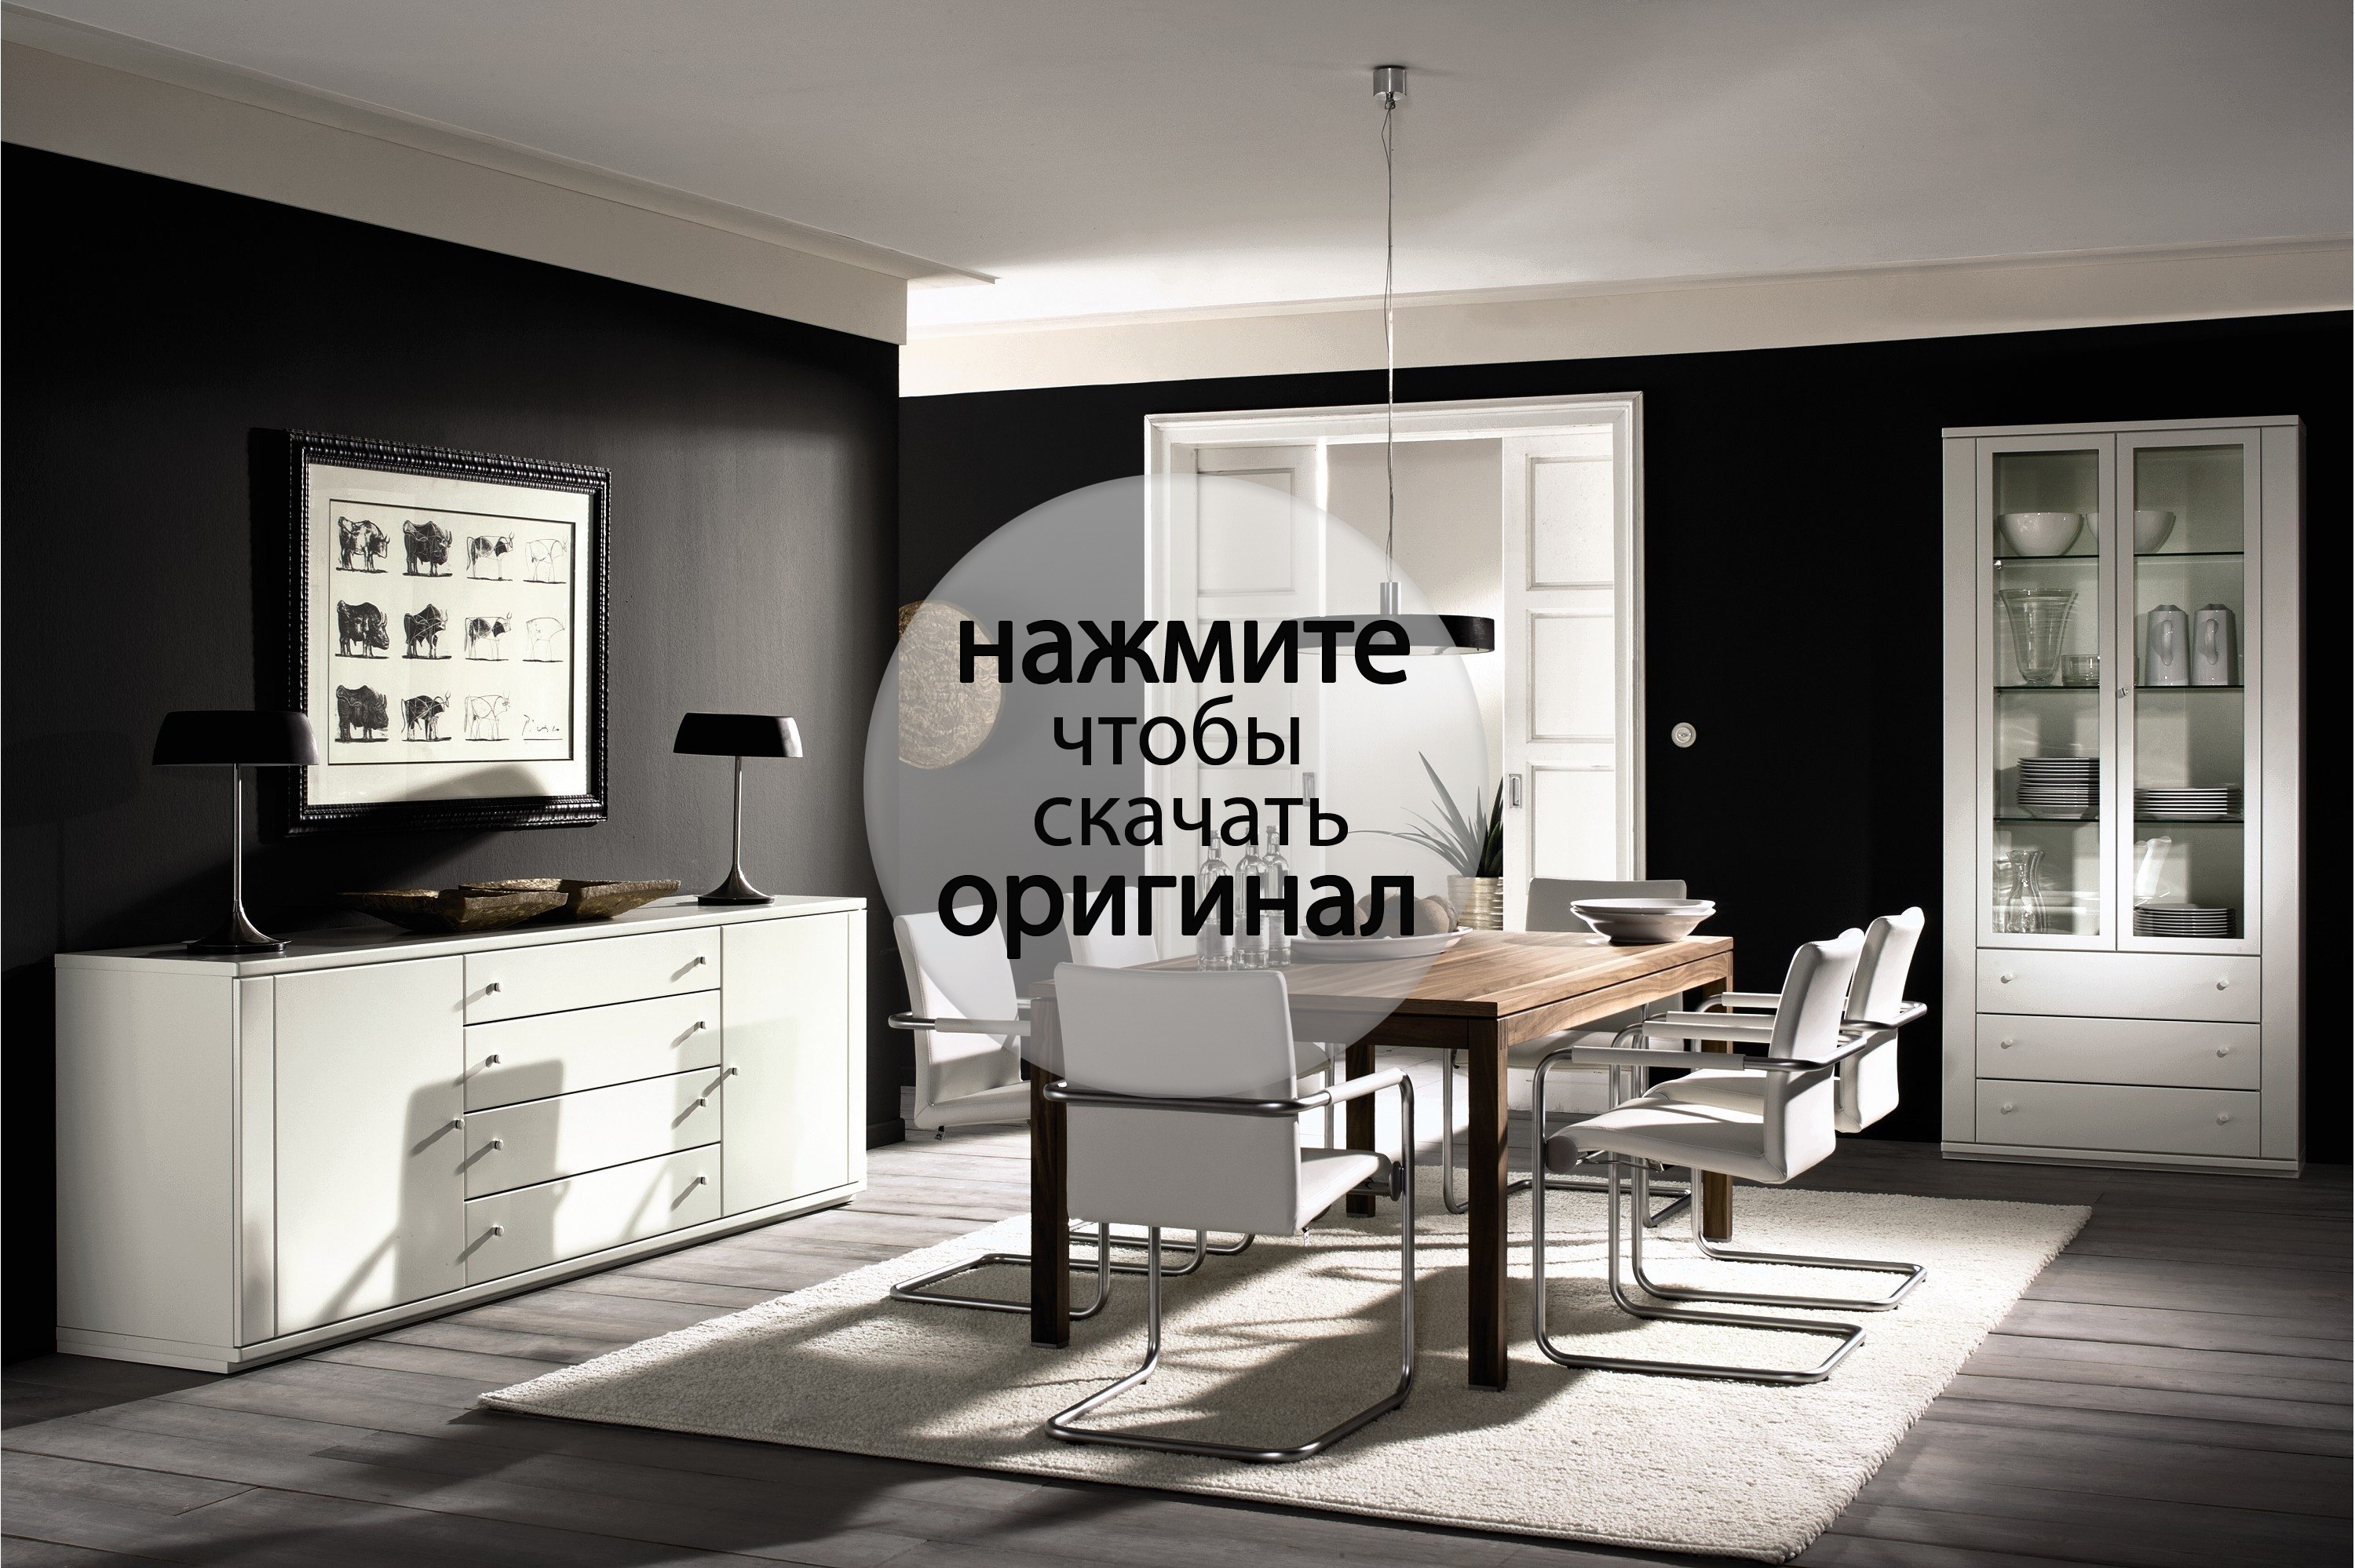 Интерьер квартиры с белой мебелью » Картинки и фотографии дизайна .